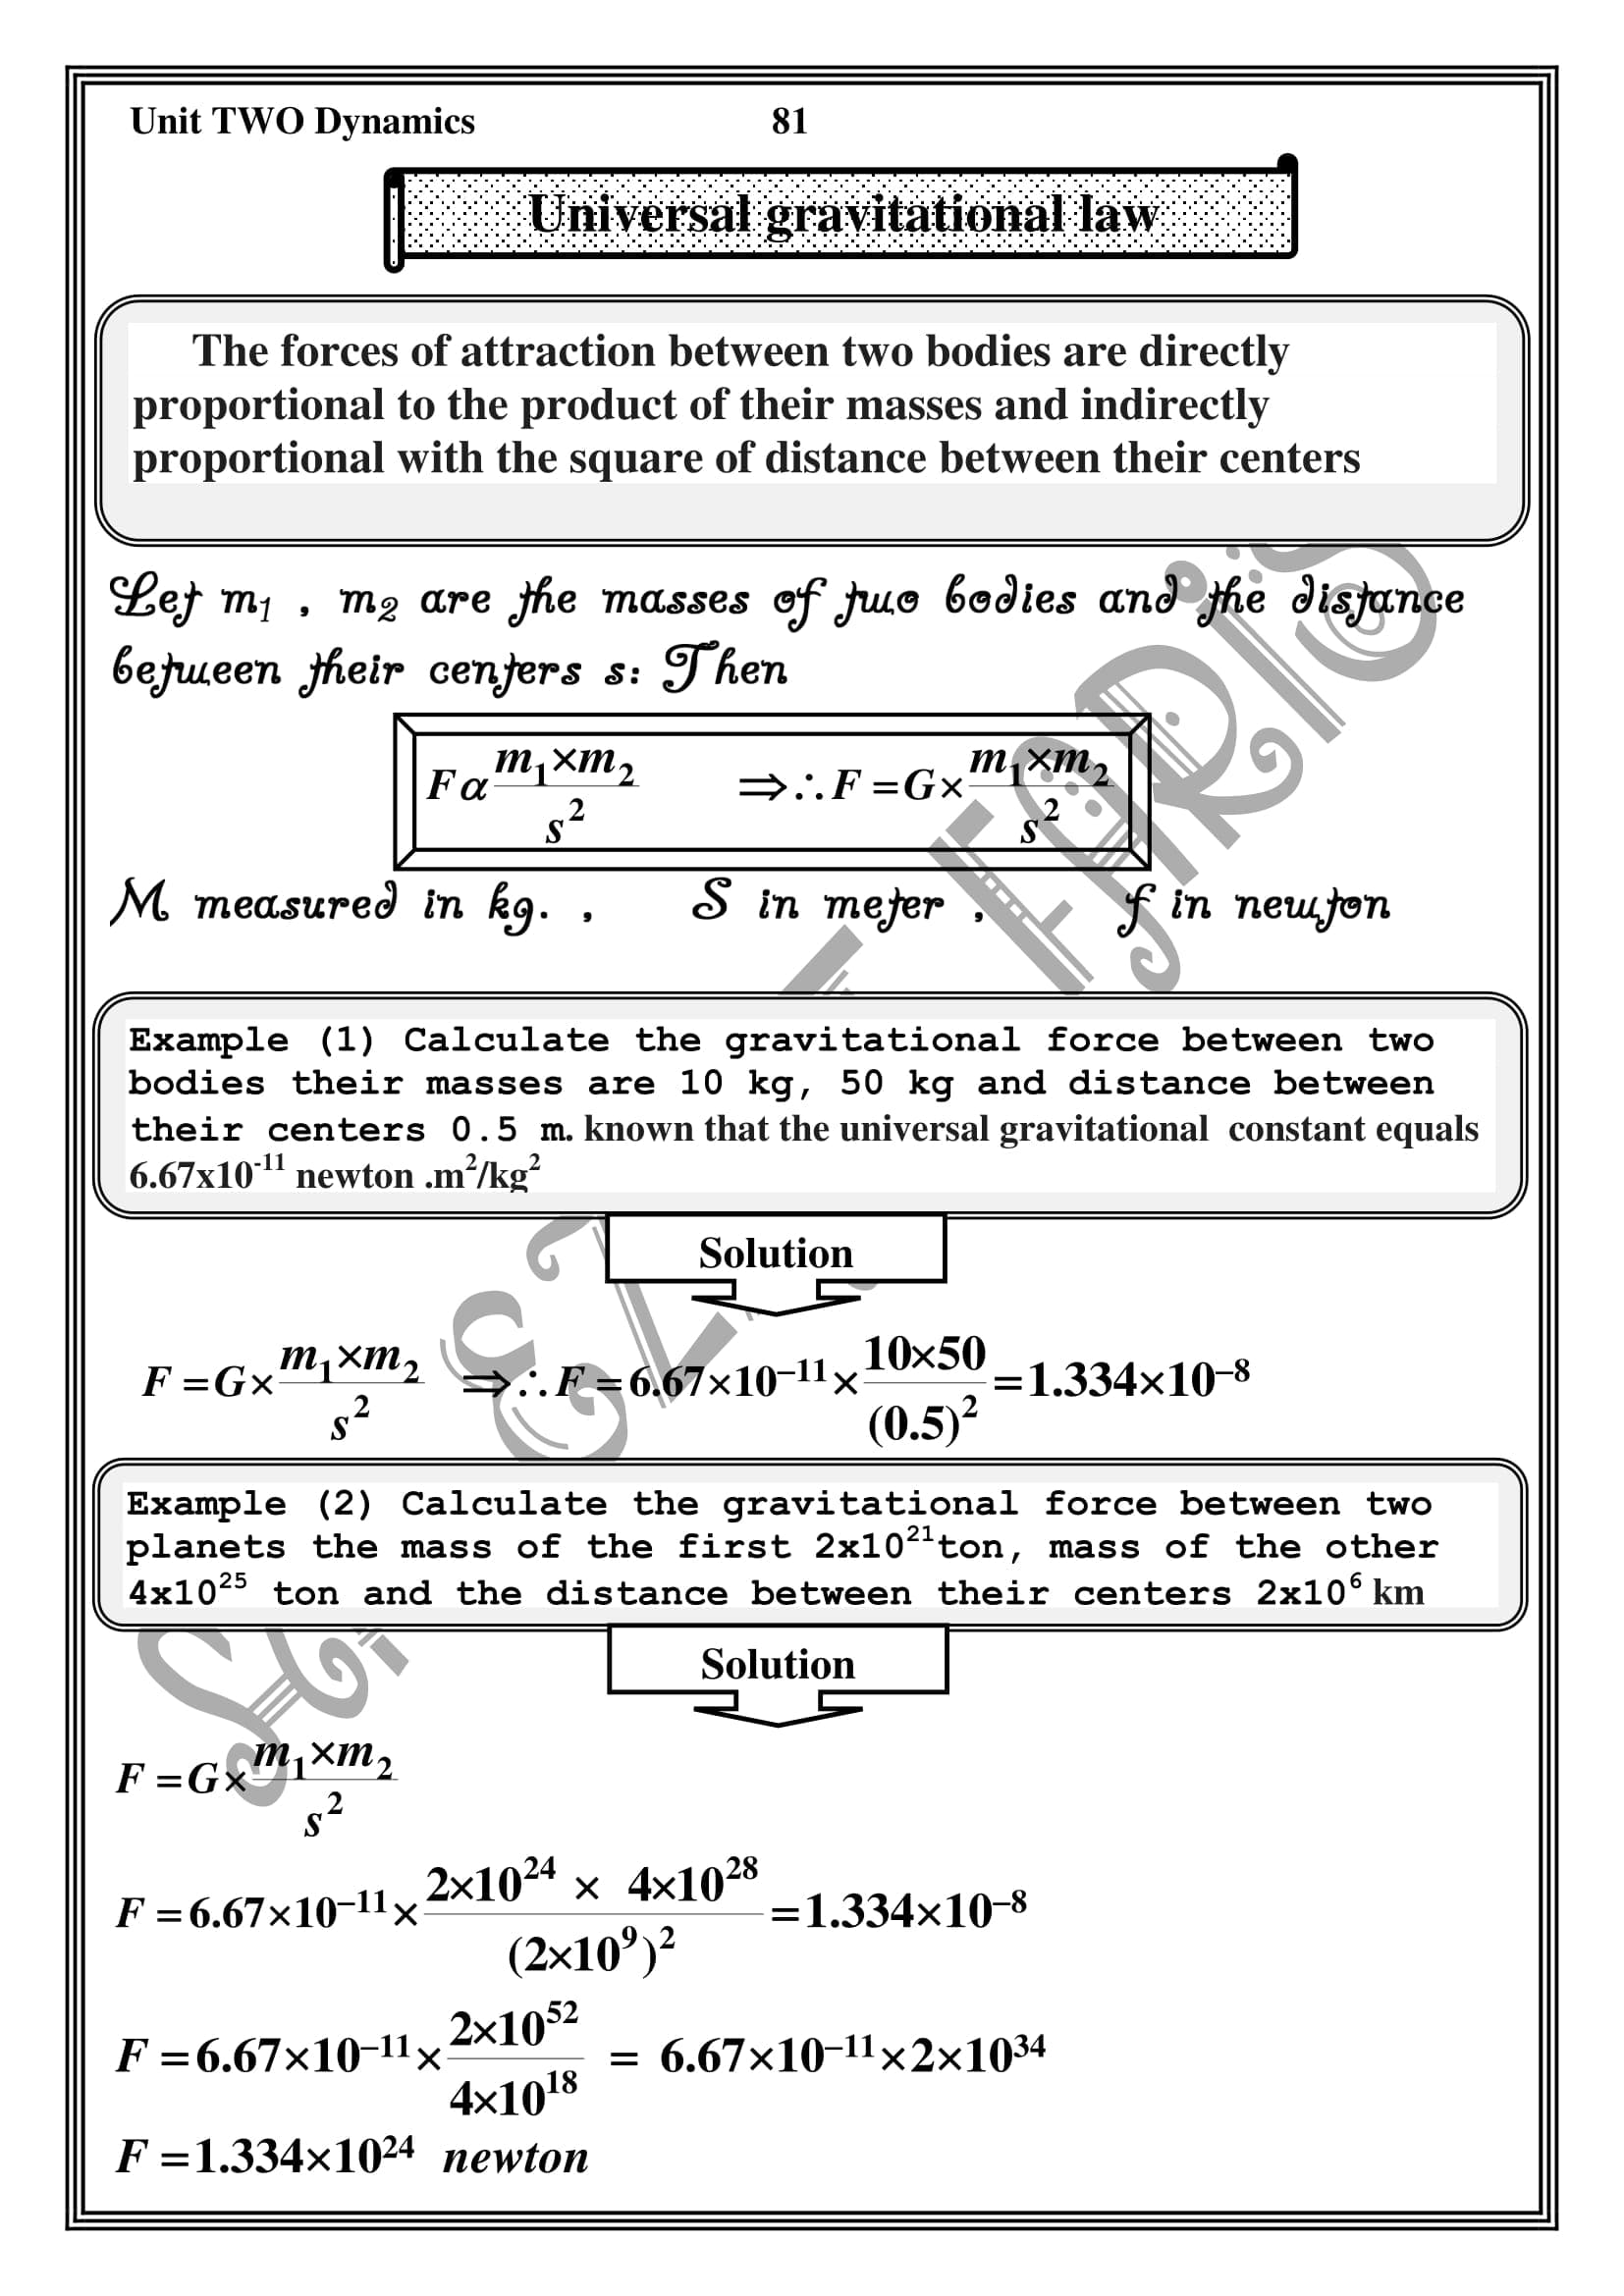 شرح وافى ل Universal gravitational law) unit 3) فى Dynamics للصف الثانى الثانوى اللغات الترم الاول